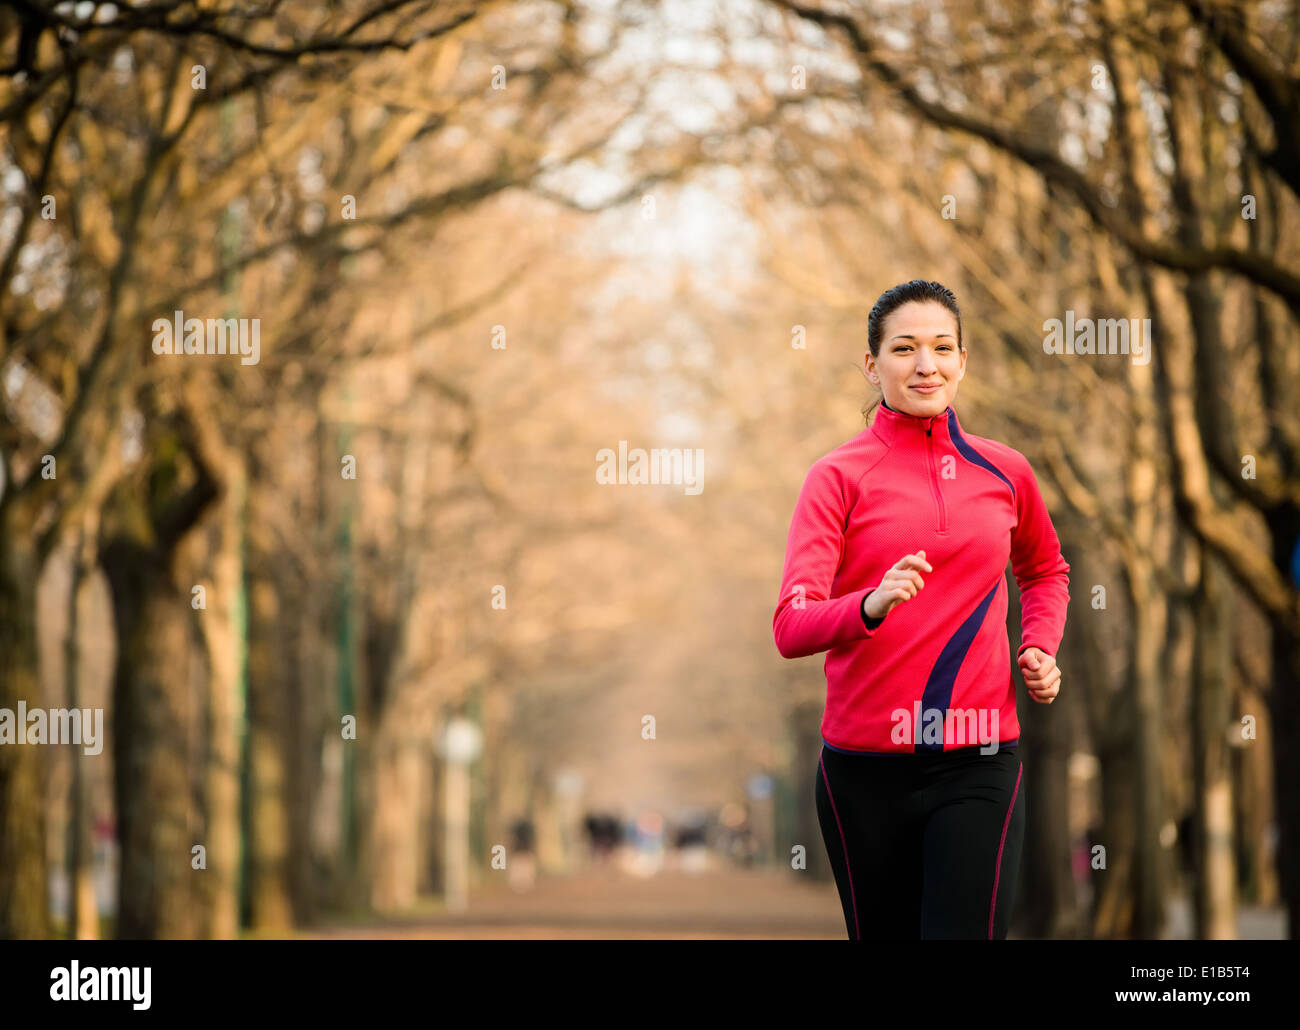 Giovane donna jogging nella struttura ad albero alley - tardo autunno Foto Stock